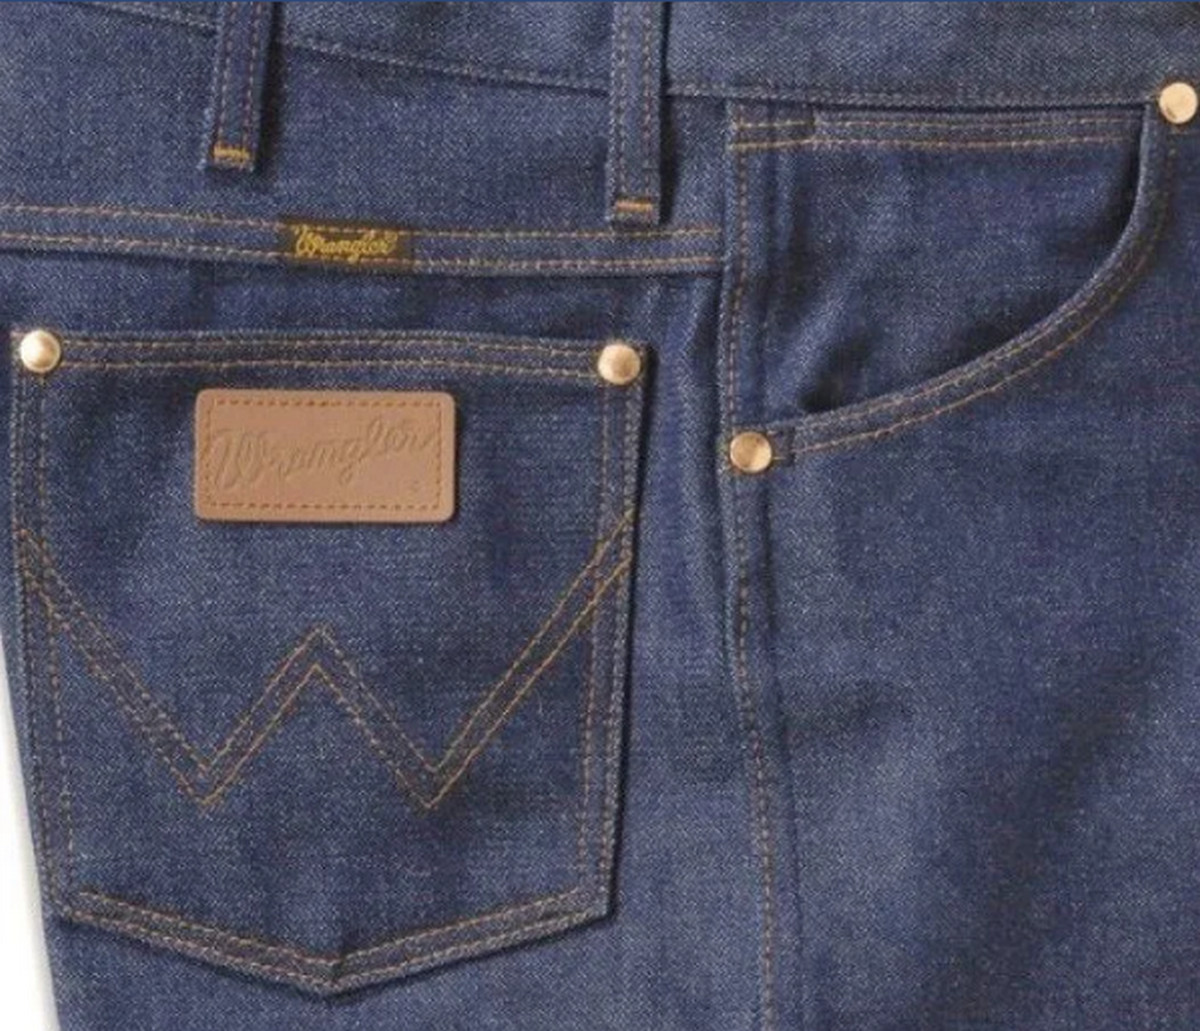 Справжні фірмові джинси - статусна річ для молоді тих років